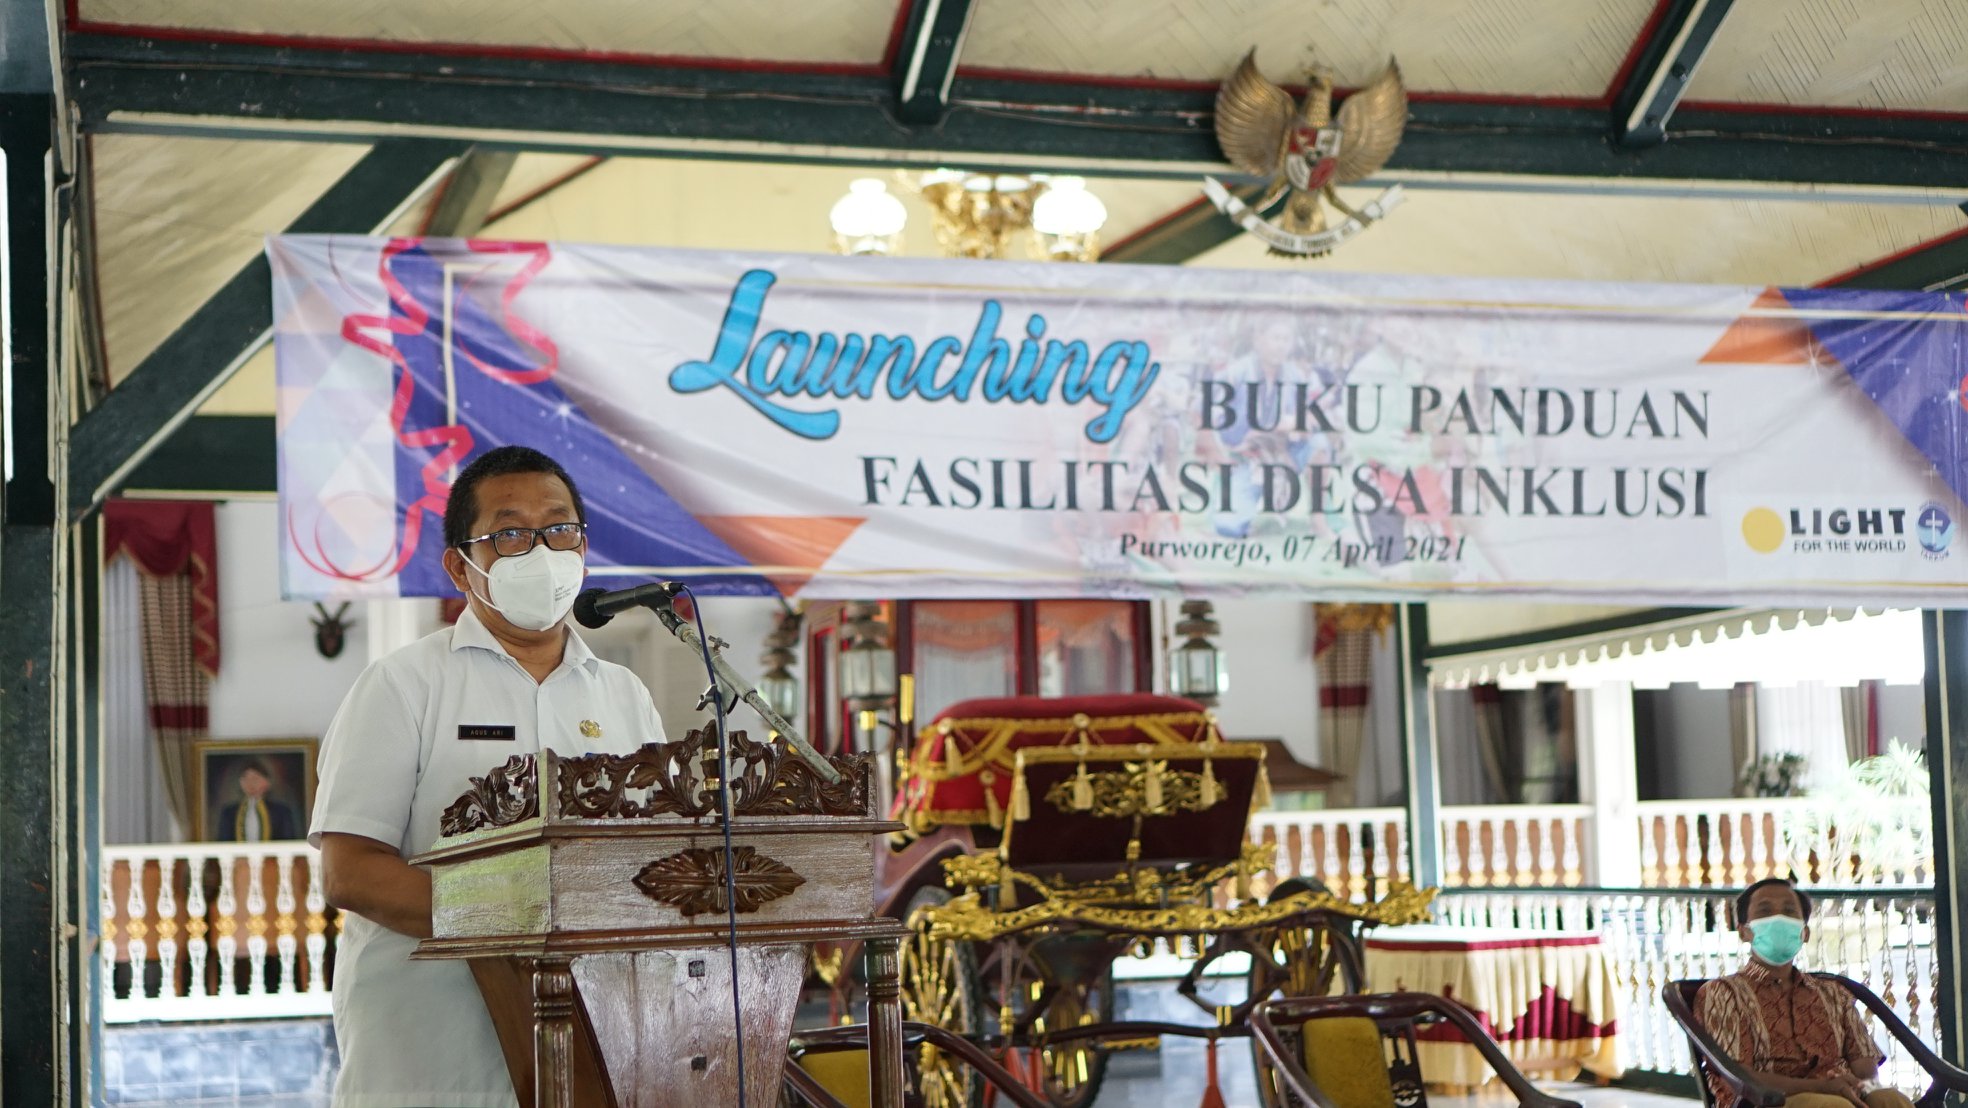 Launching Buku Panduan Desa Inklusi Purworejo